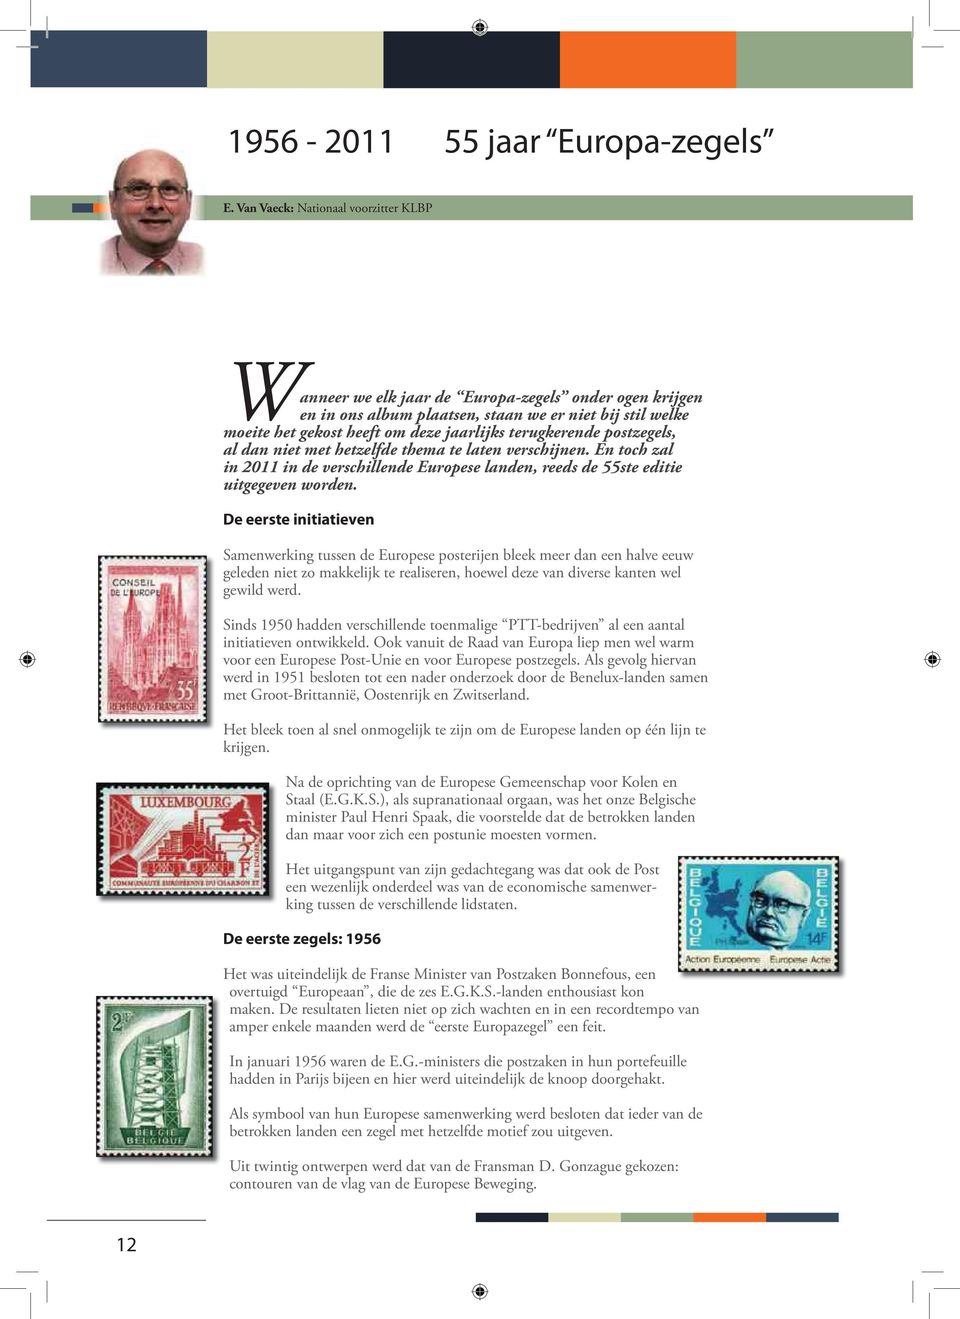 terugkerende postzegels, al dan niet met hetzelfde thema te laten verschijnen. En toch zal in 2011 in de verschillende Europese landen, reeds de 55ste editie uitgegeven worden.